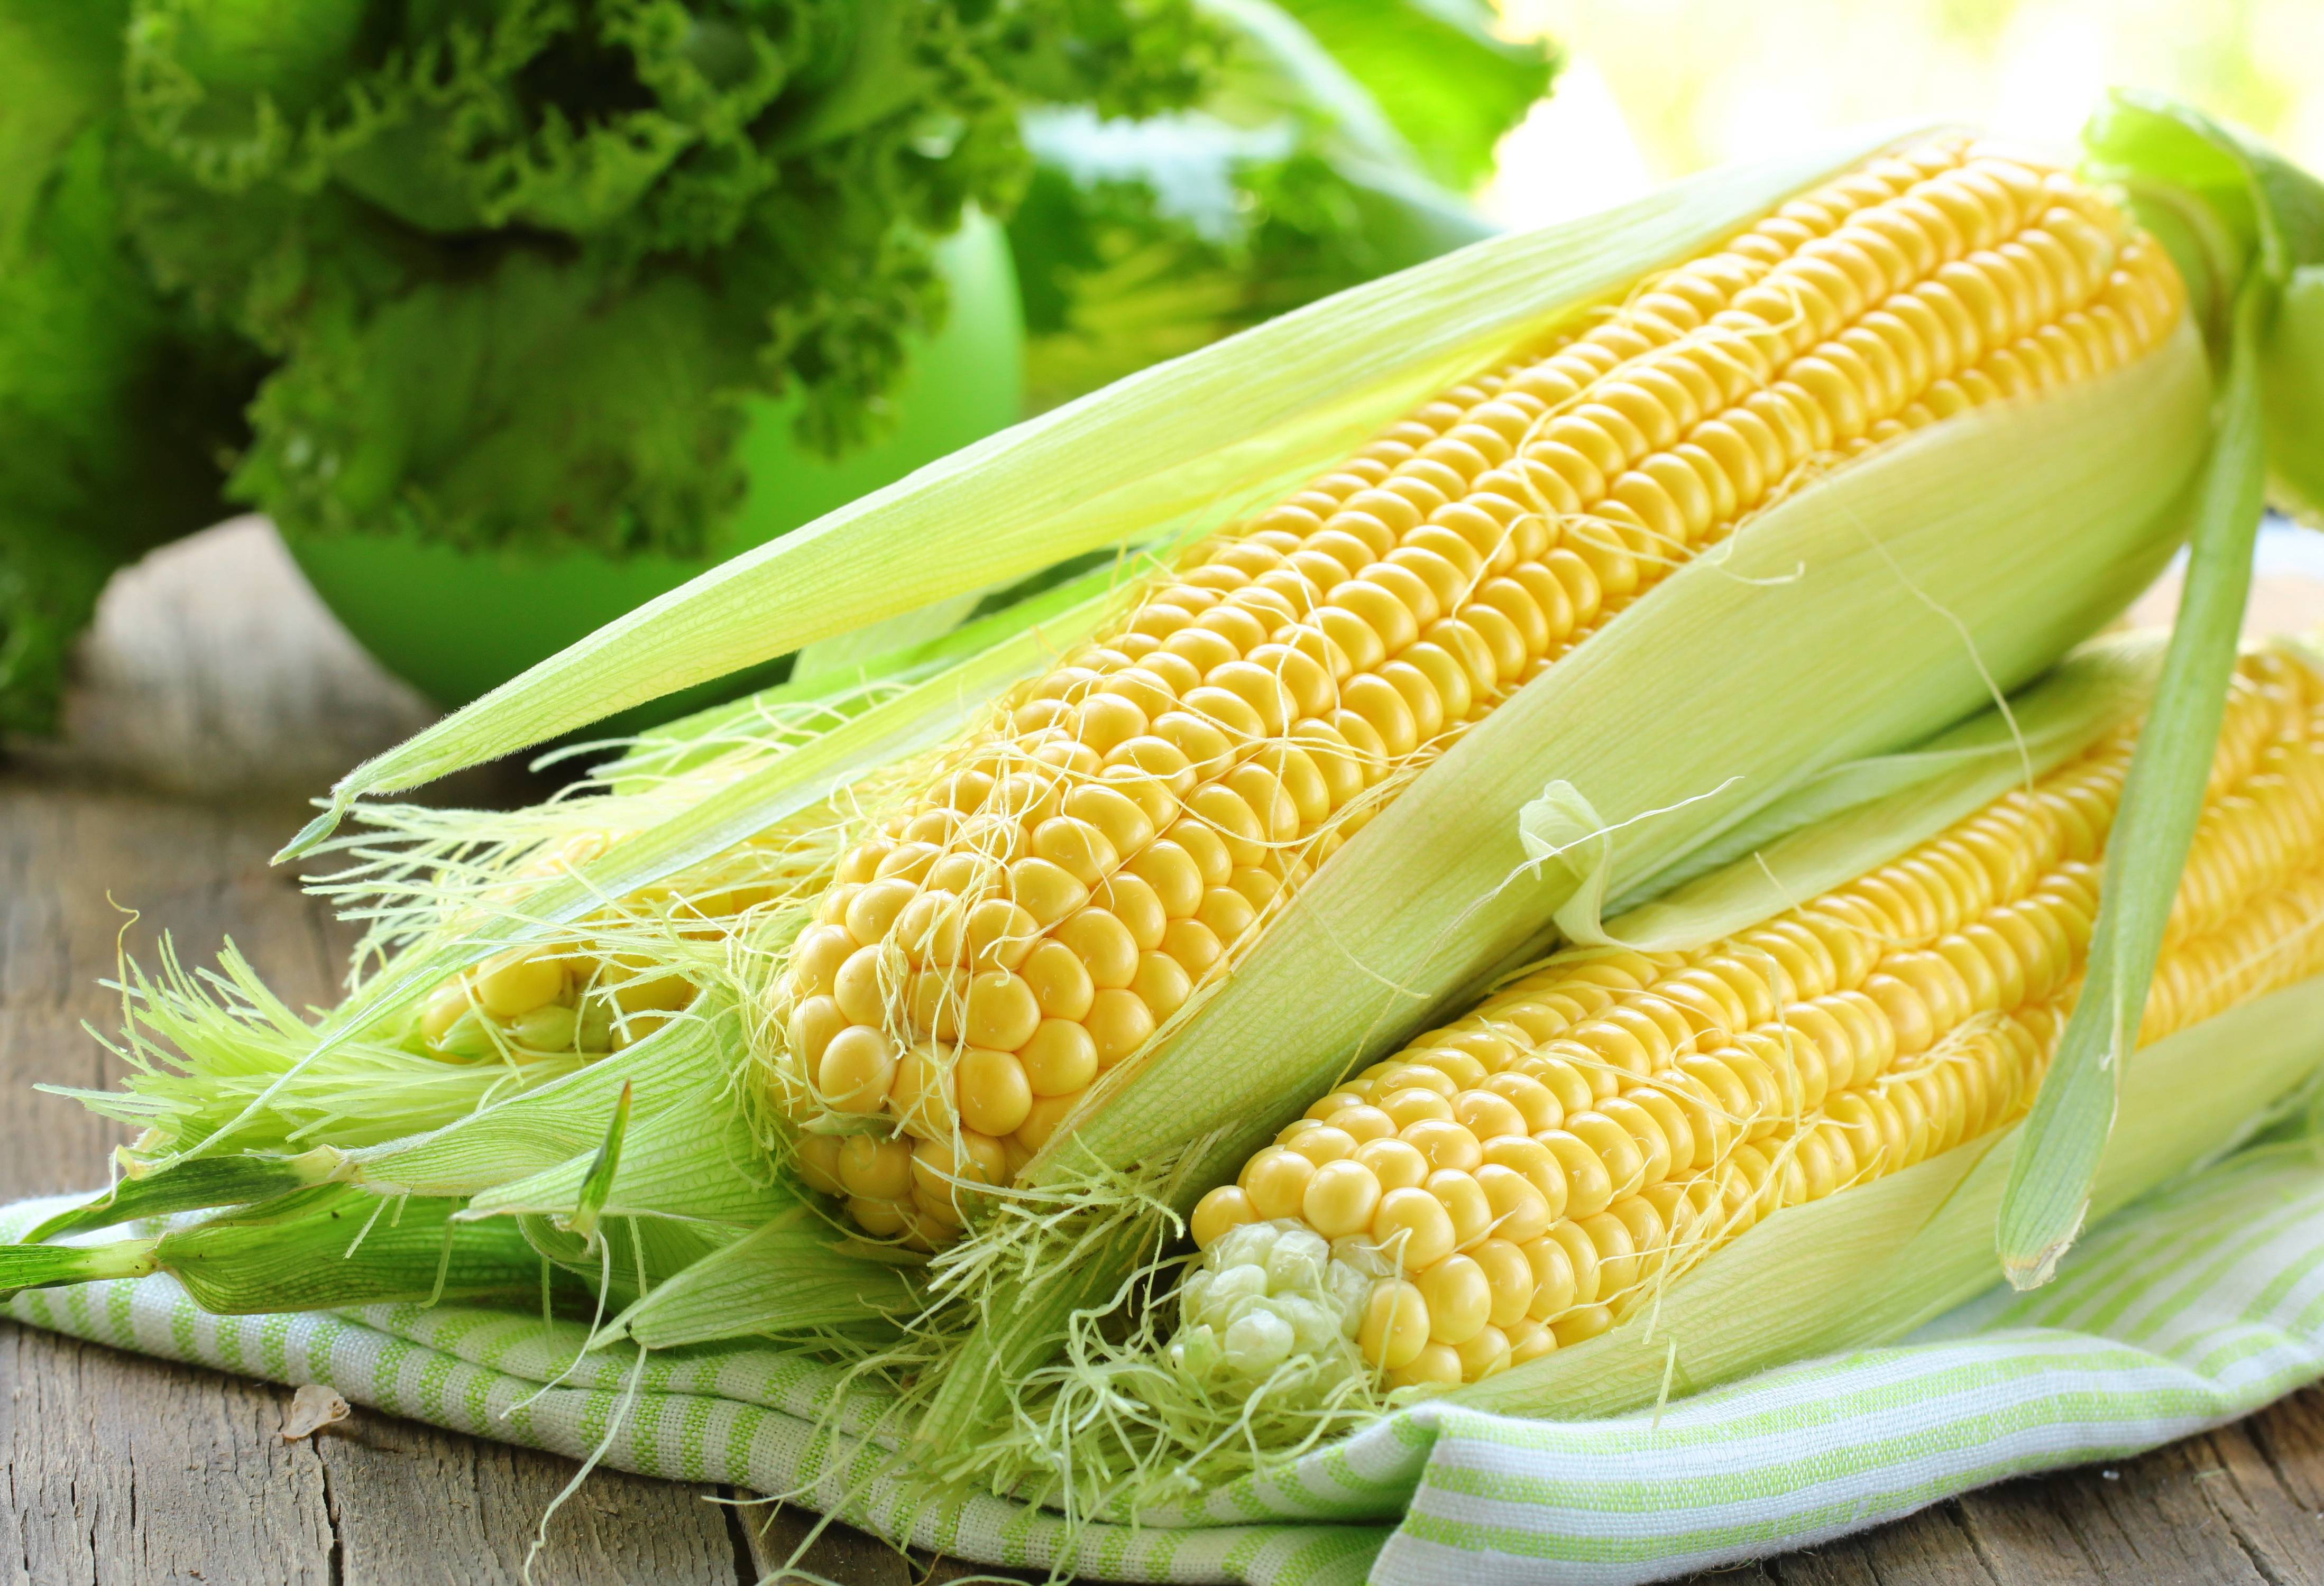 Варёная кукуруза: калорийность, польза и вред для здоровья организма